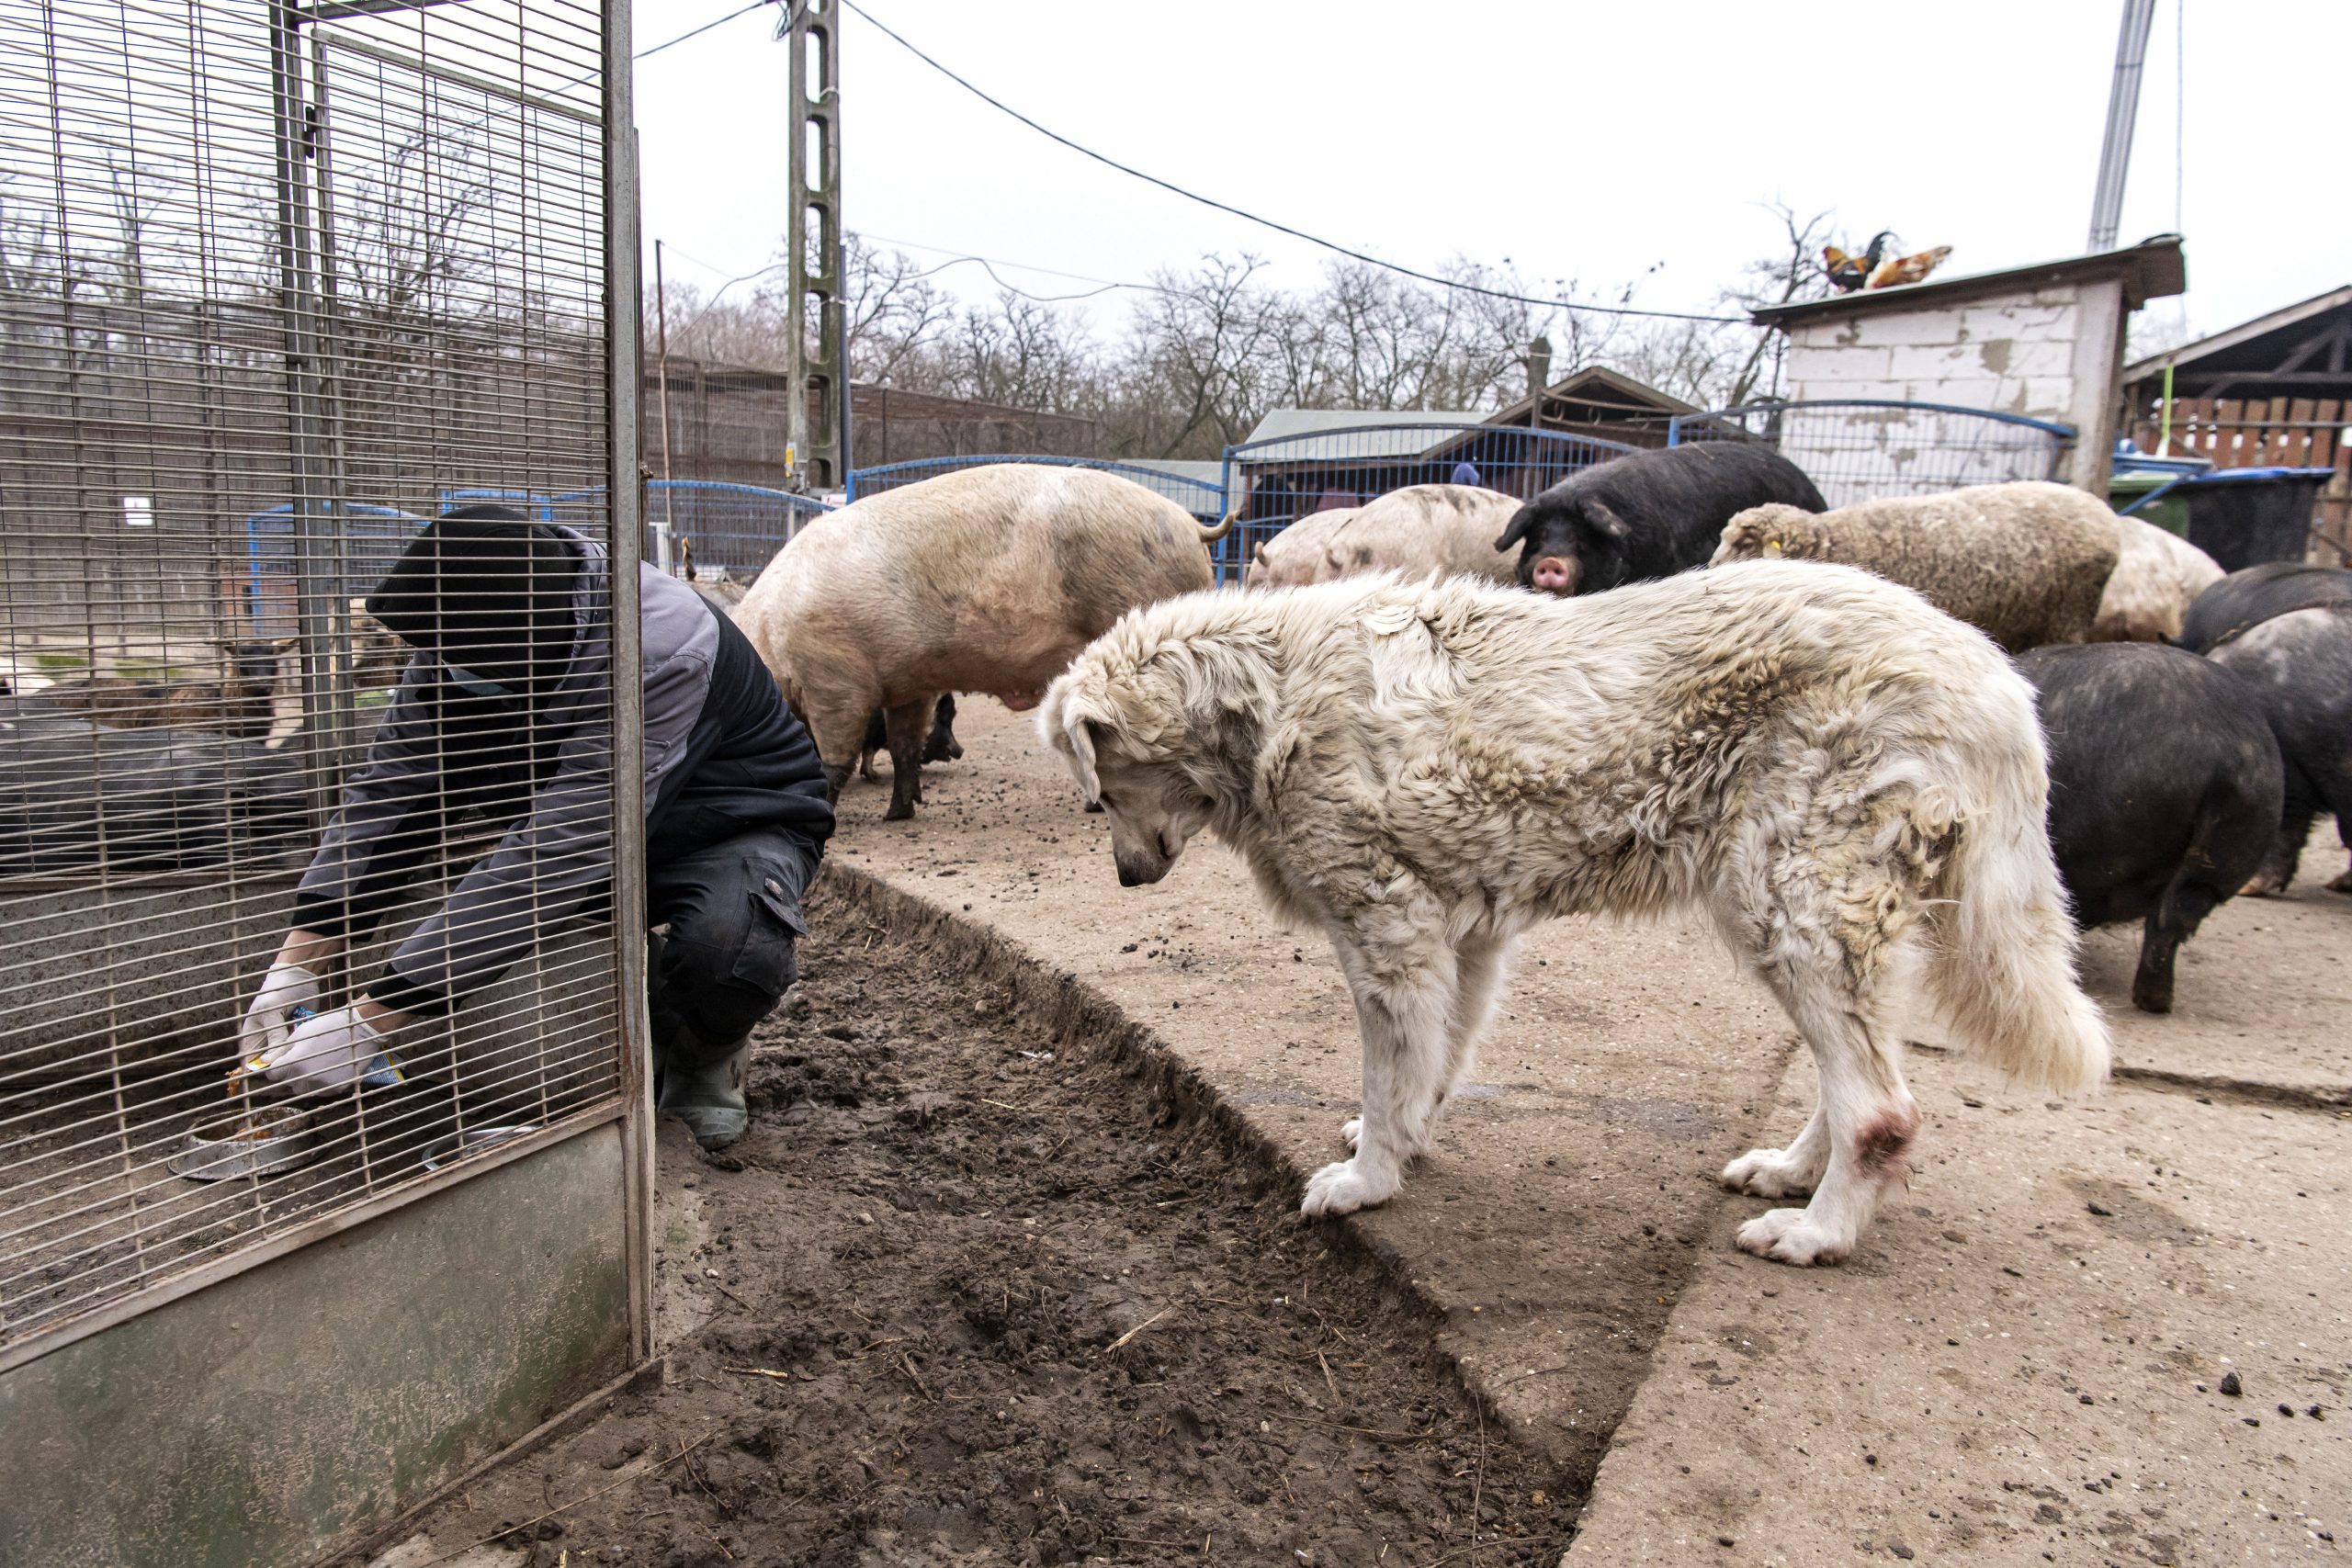 Hungary to Establish New Animal Protection Law